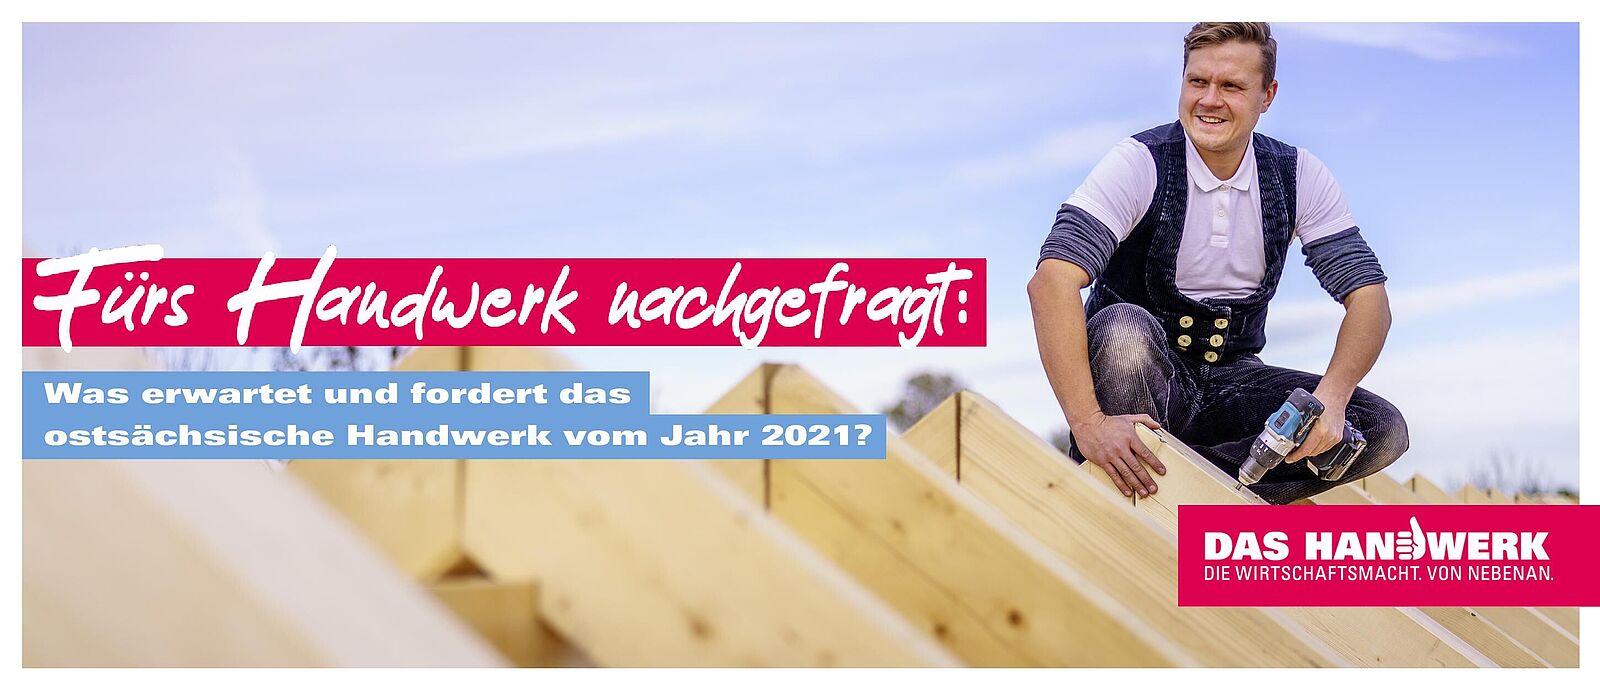 Eine Person steht auf einer Holzdachkonstruktion und befestigt Dachelemente mit einem Akuschrauber. Darüber der Spruch: Fürs Handwerk nachgefragt: Was erwartet und fordert das ostsächsische Handwerk vom Jahr 2021?